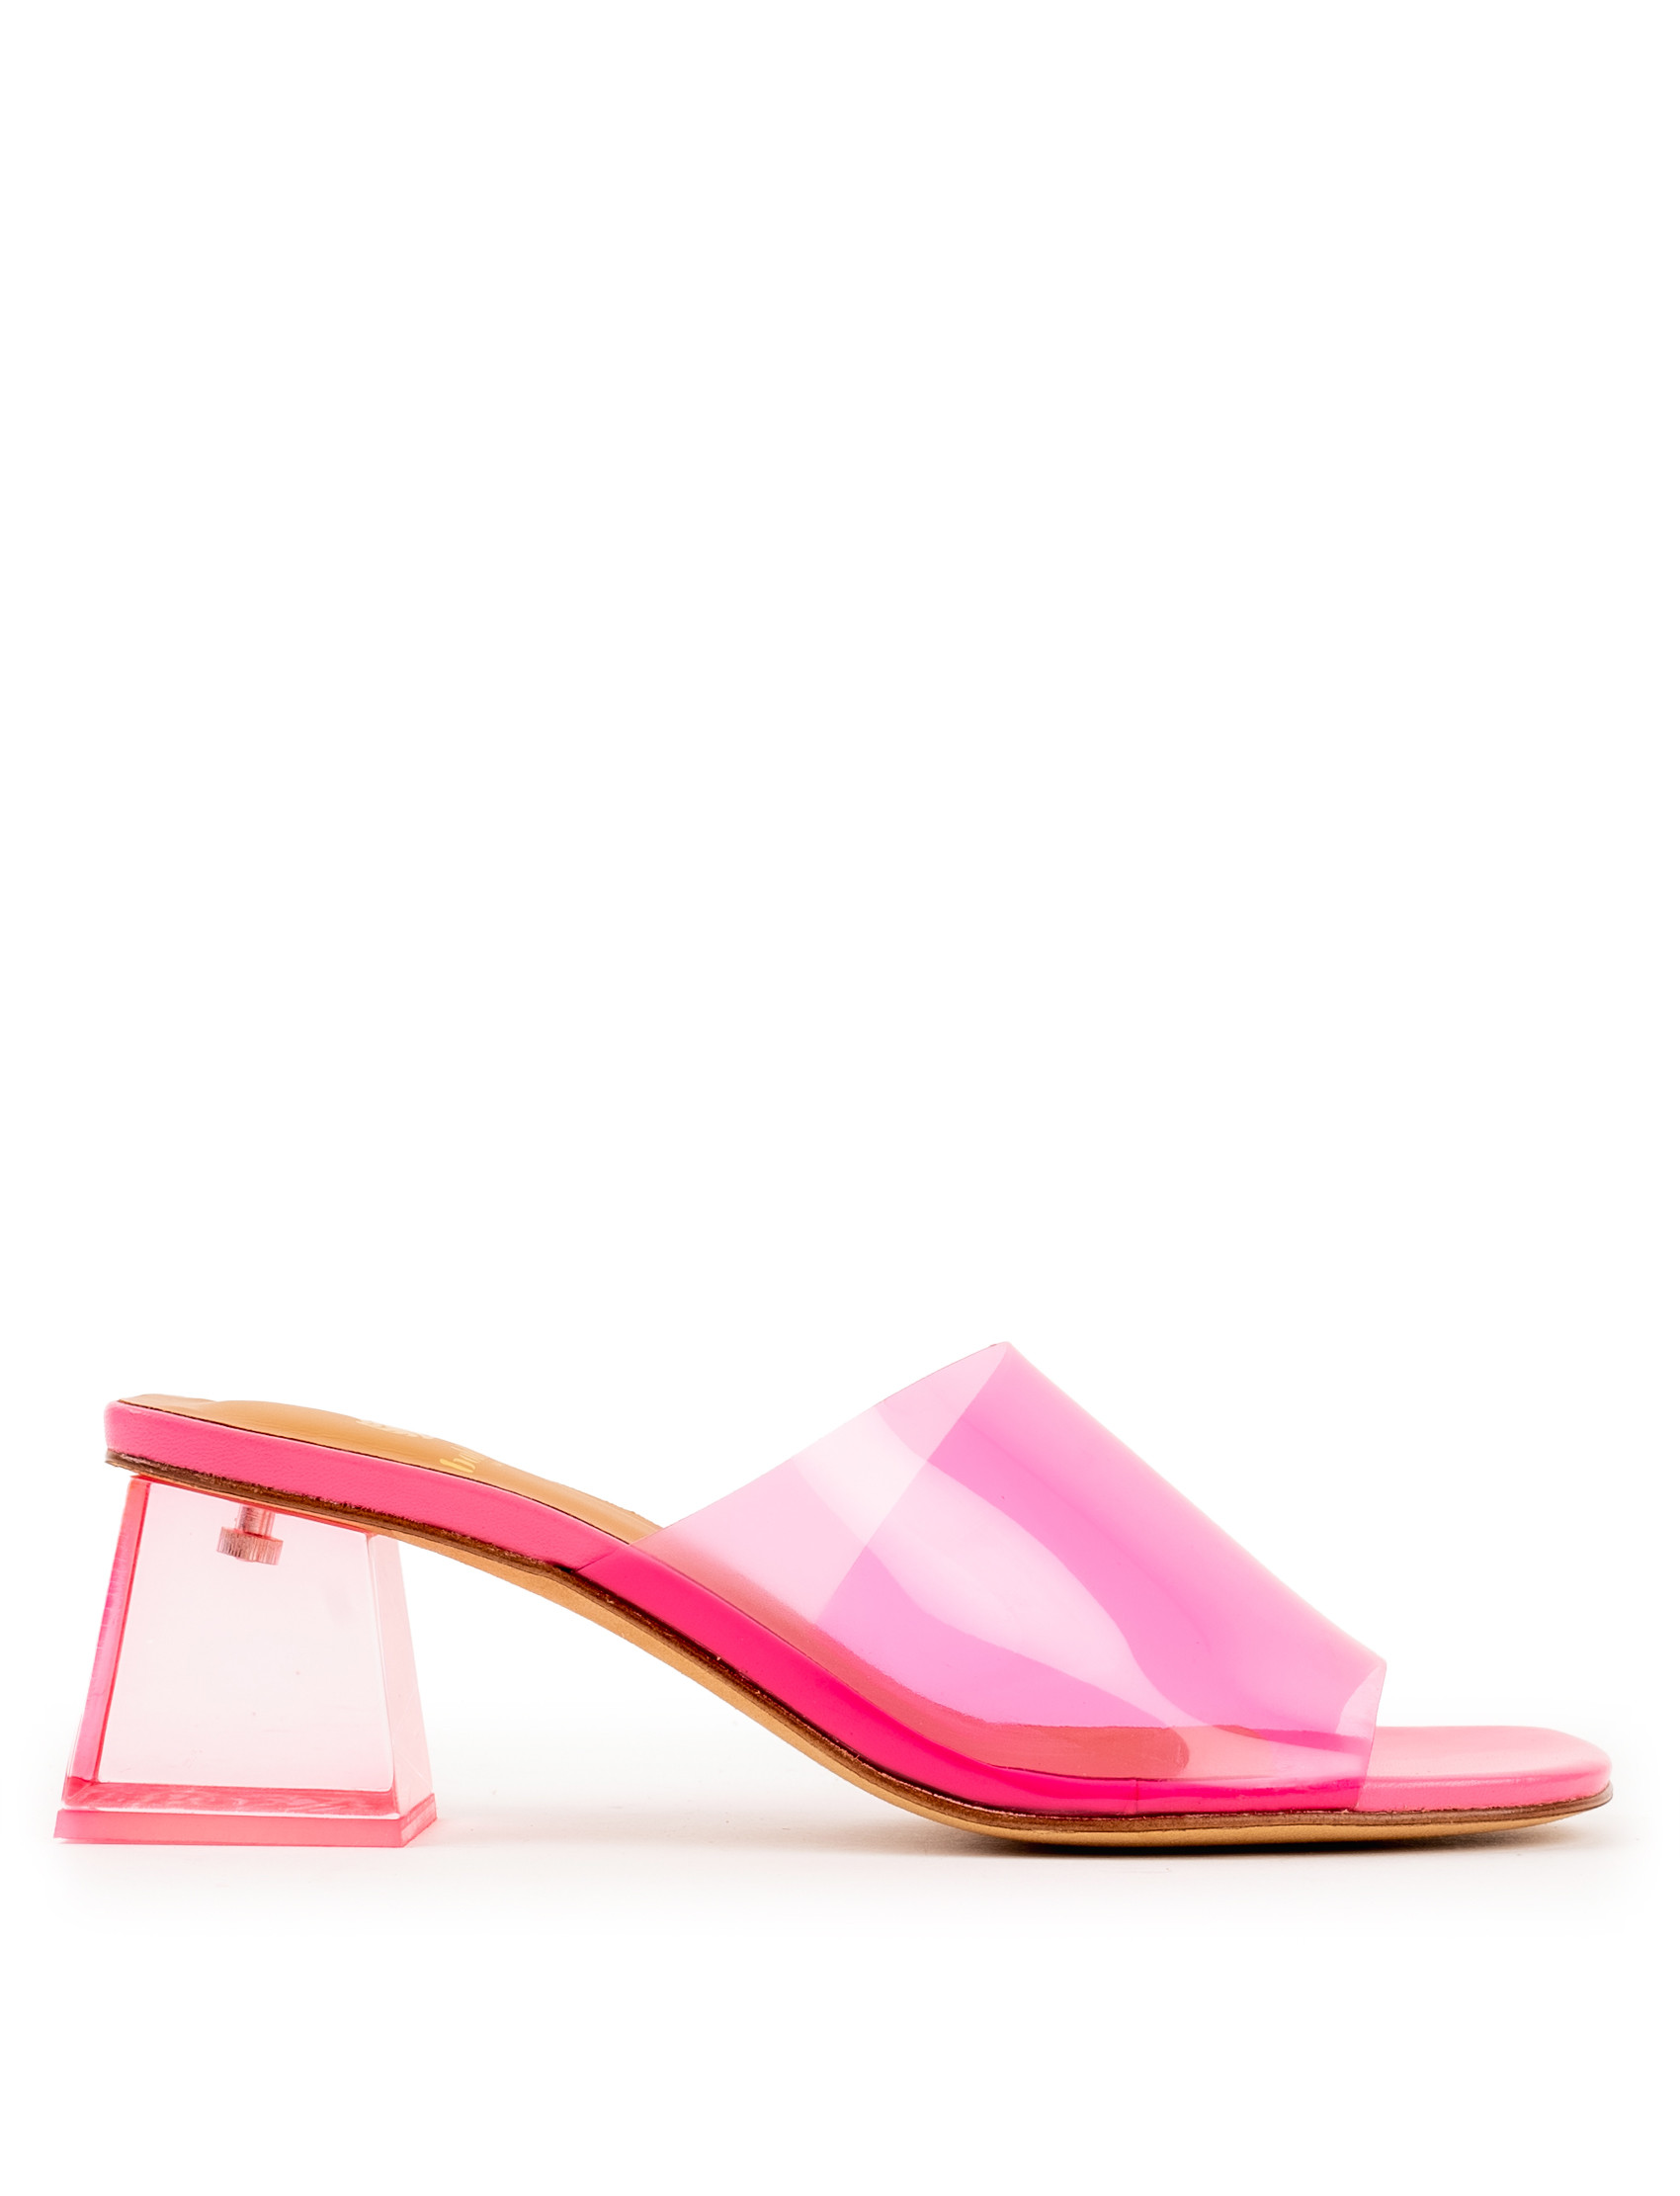 Heeled Sandals Margot - Jelly Pink - Women - Bobbies